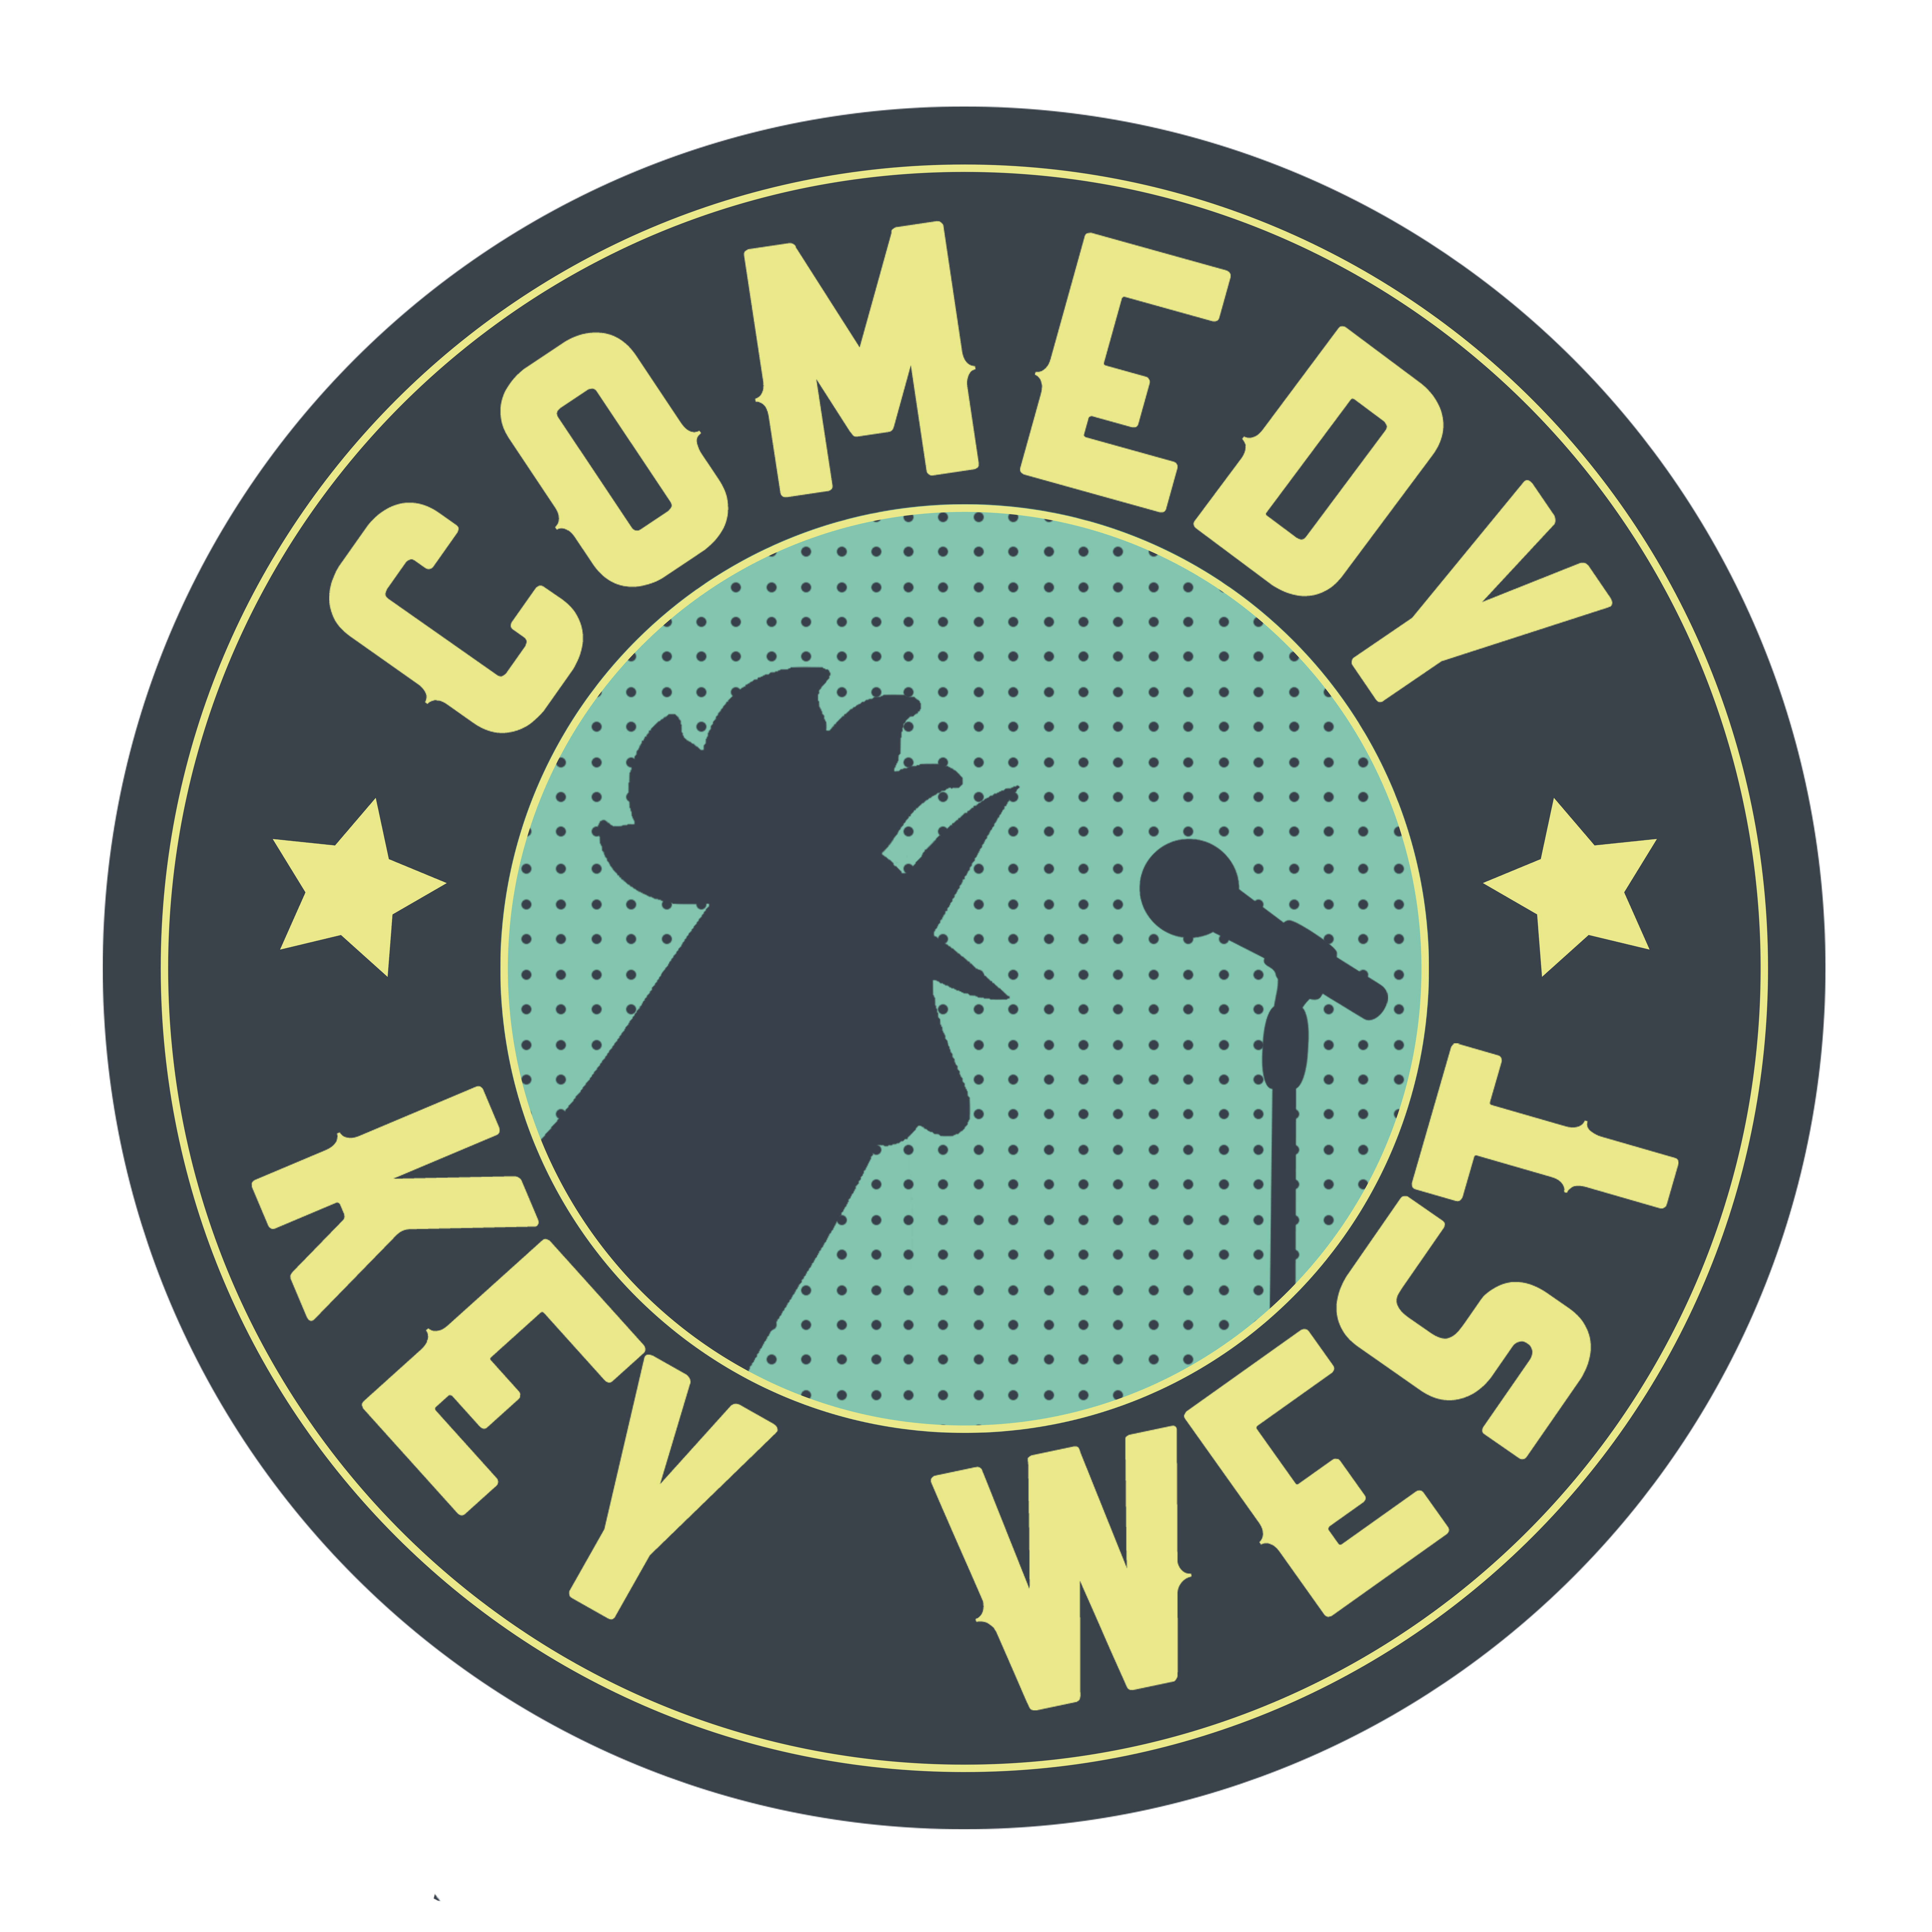 Comedy Club Key West